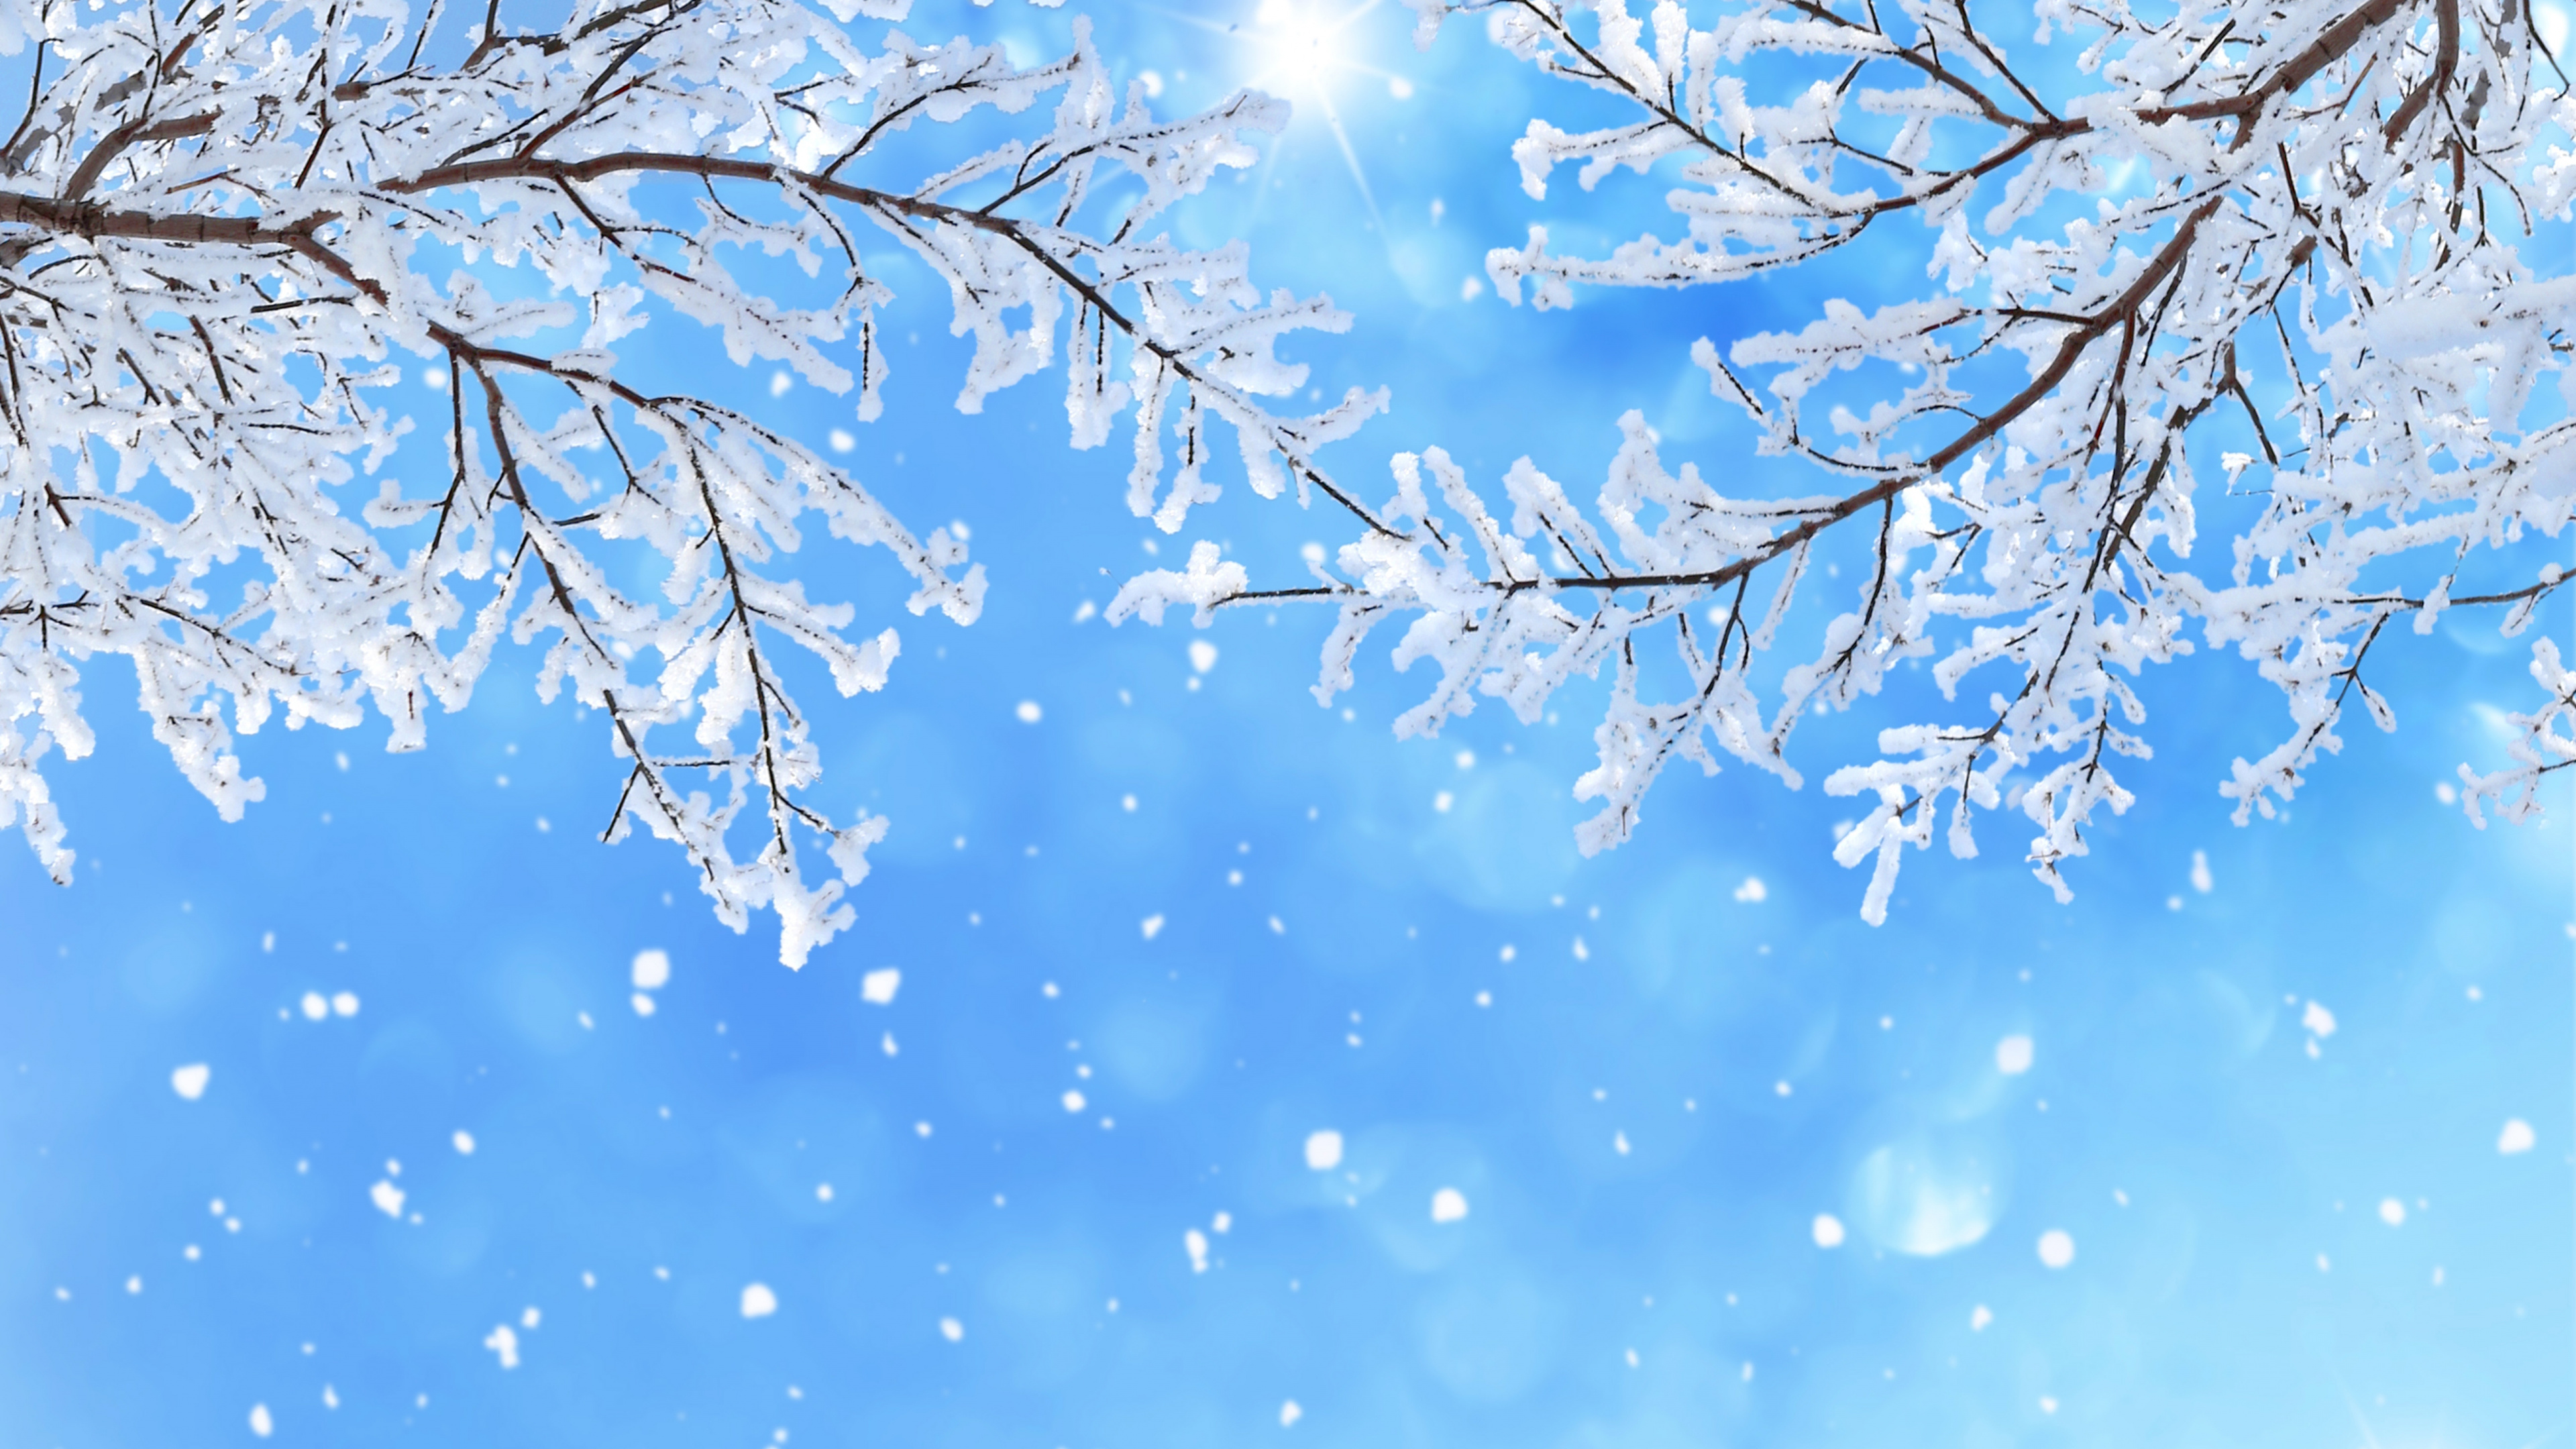 冬天, 季节, 颜色, 开花, 天空 壁纸 3840x2160 允许